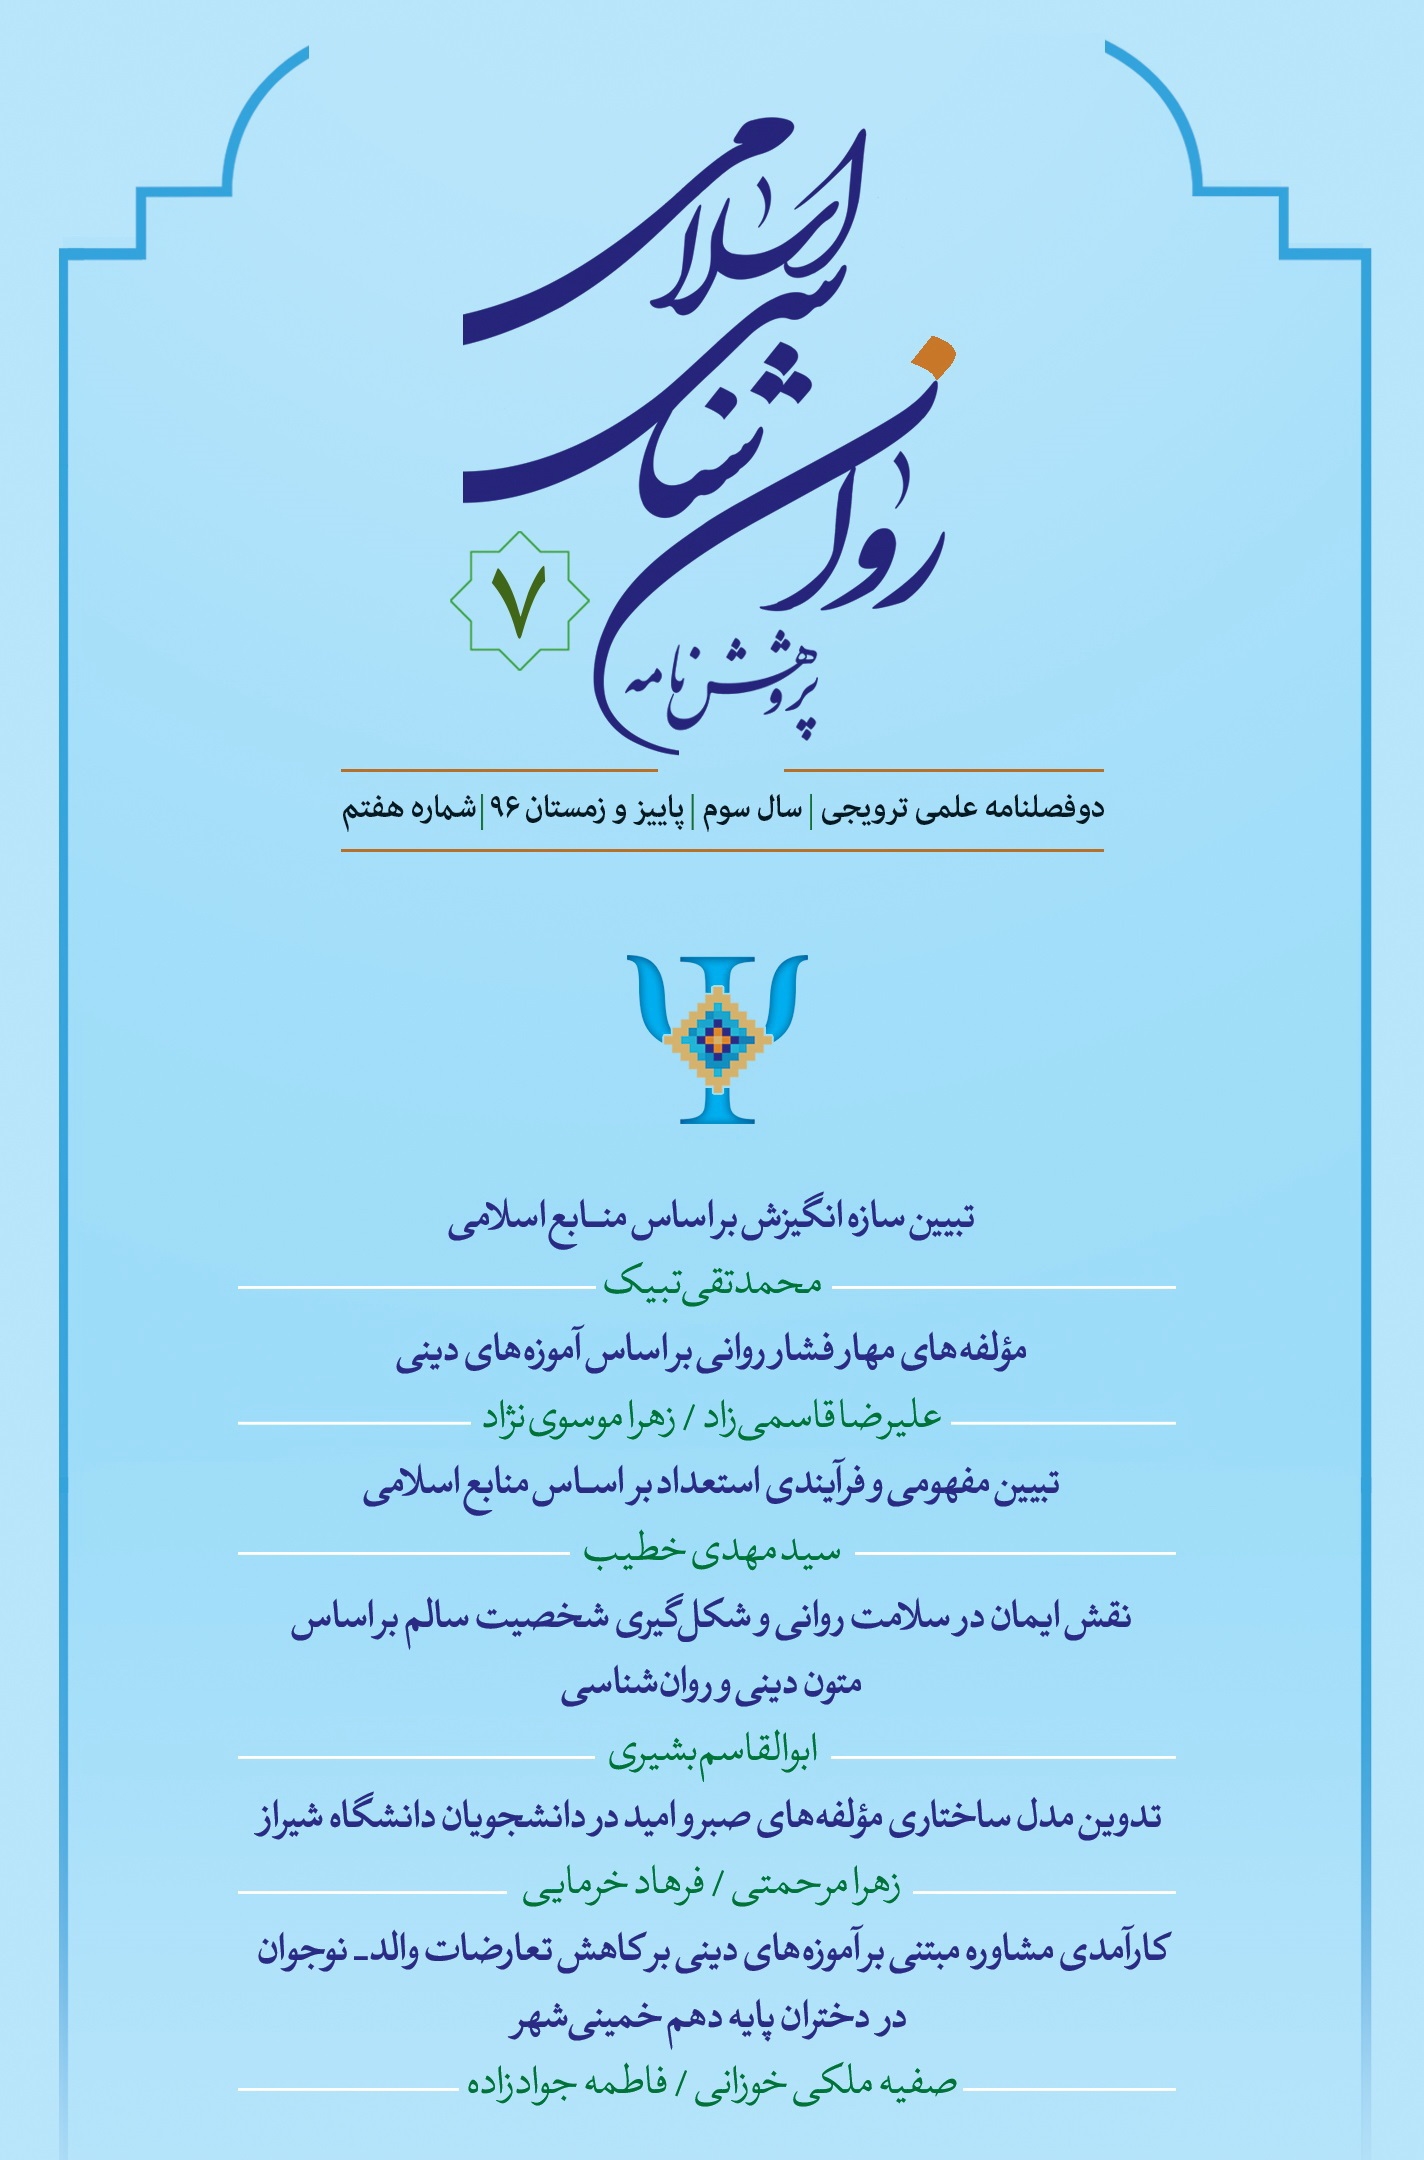 هفتمین شماره "پژوهش نامه روان شناسی اسلامی" منتشر شد